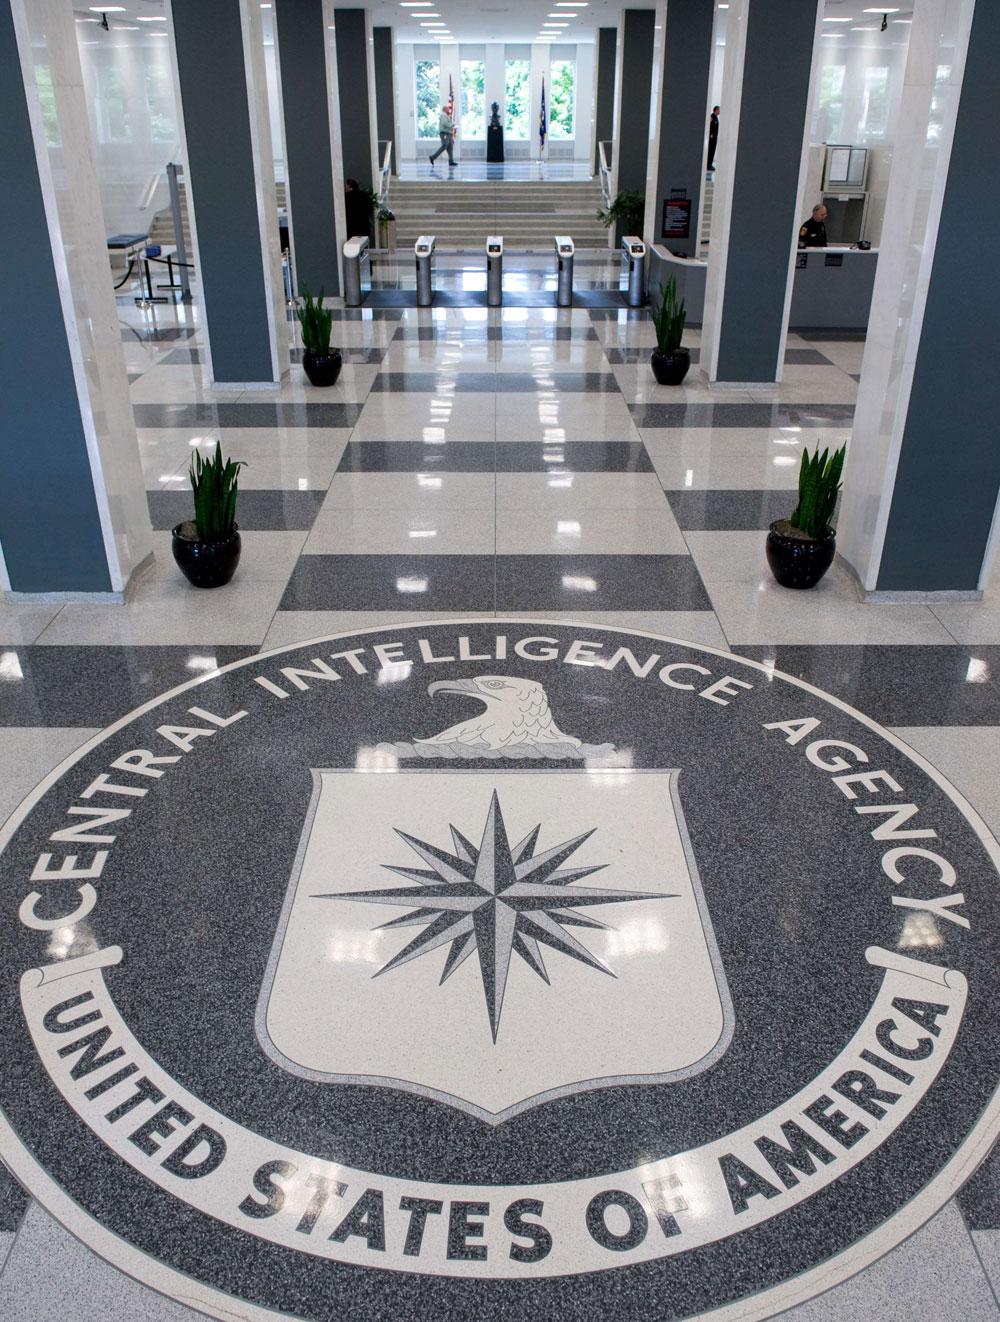 Rapporten handlar om hur CIA har behandlat misstänkta terrorister efter 11 september-attackerna